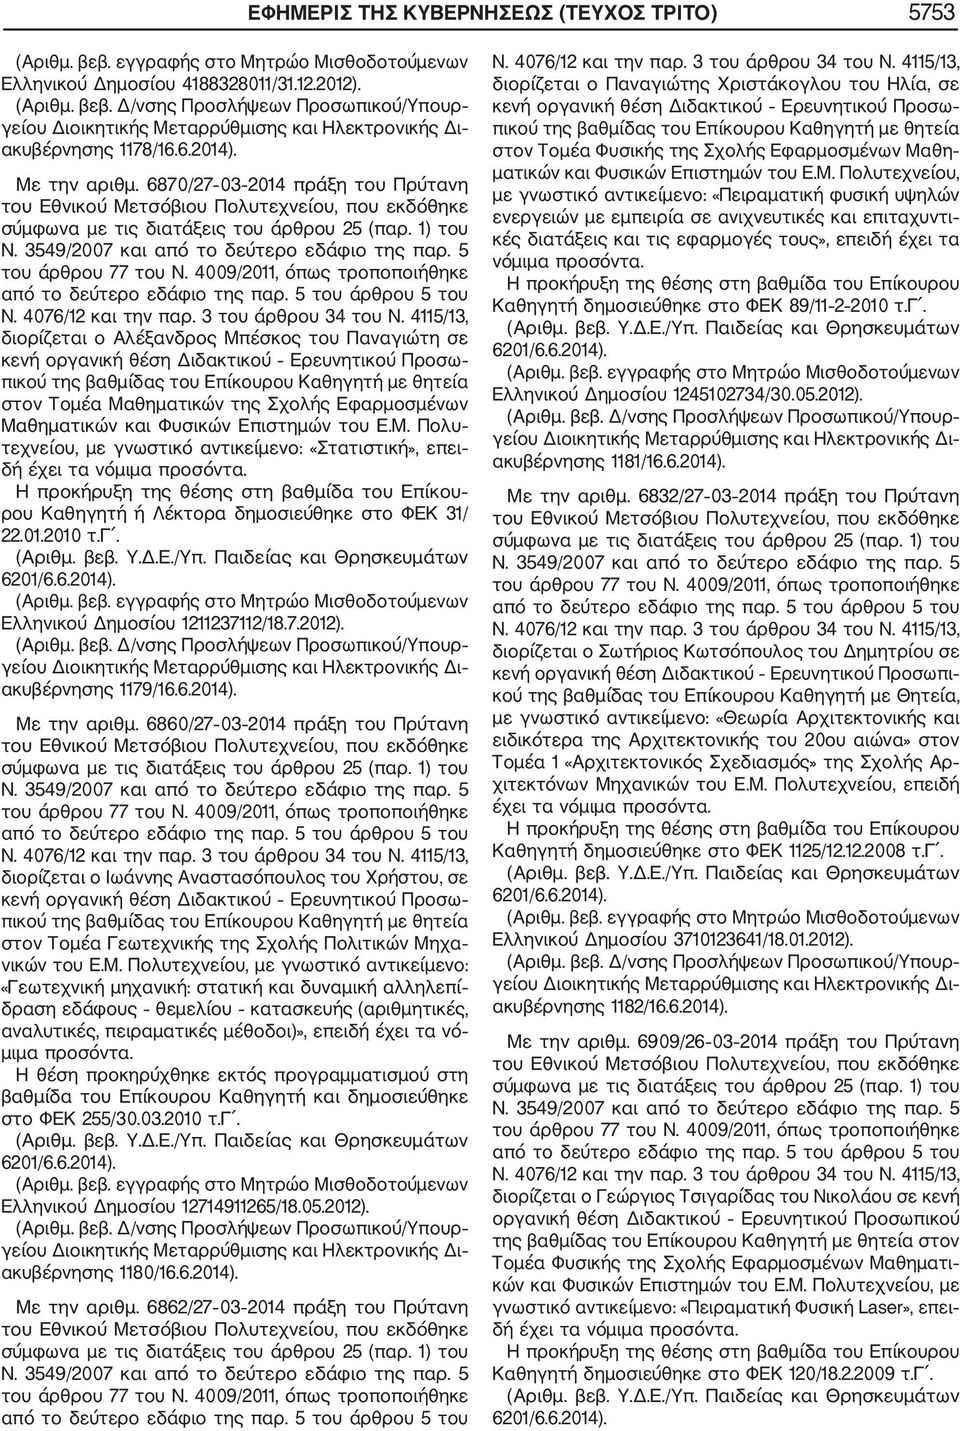 Φυσικών Επιστημών του Ε.Μ. Πολυ τεχνείου, με γνωστικό αντικείμενο: «Στατιστική», επει δή έχει τα νό Η προκήρυξη της θέσης στη βαθμίδα του Επίκου ρου Καθηγητή ή Λέκτορα δημοσιεύθηκε στο ΦΕΚ 31/ 22.01.